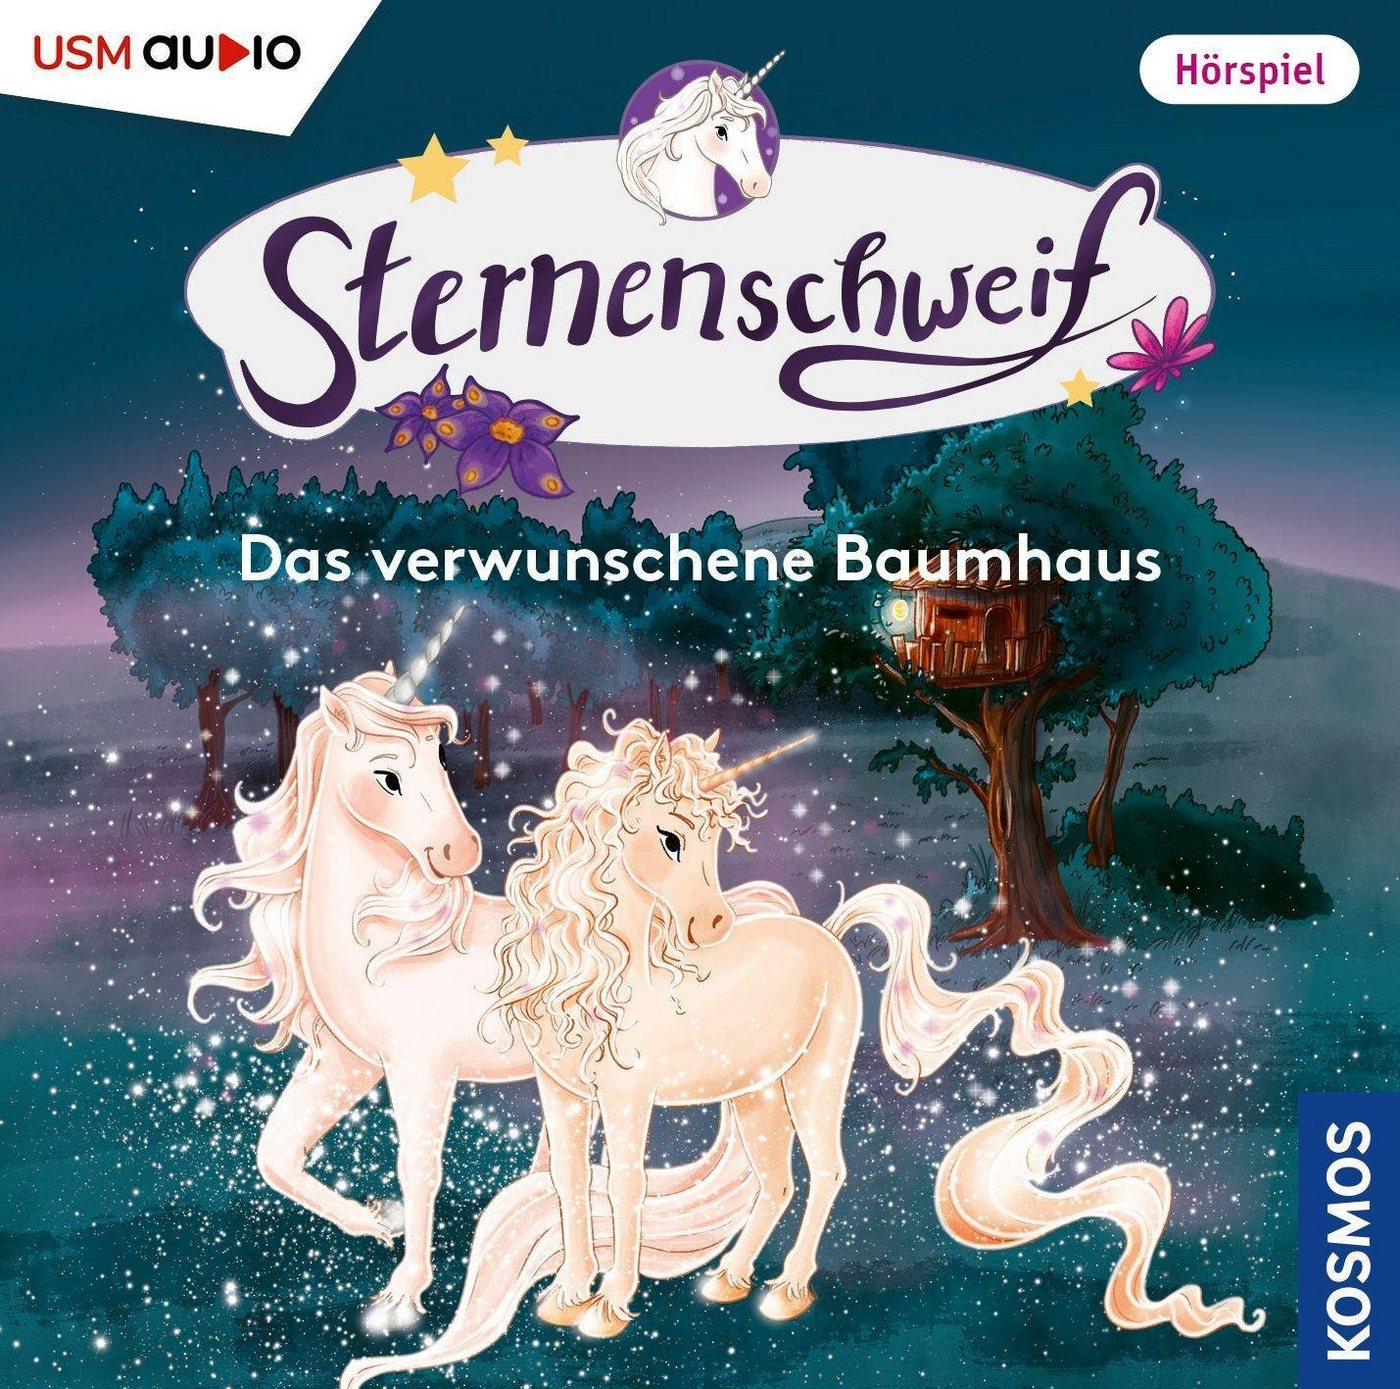 USM Hörspiel-CD Sternenschweif 63 - Das verwunschene Baumhaus von USM